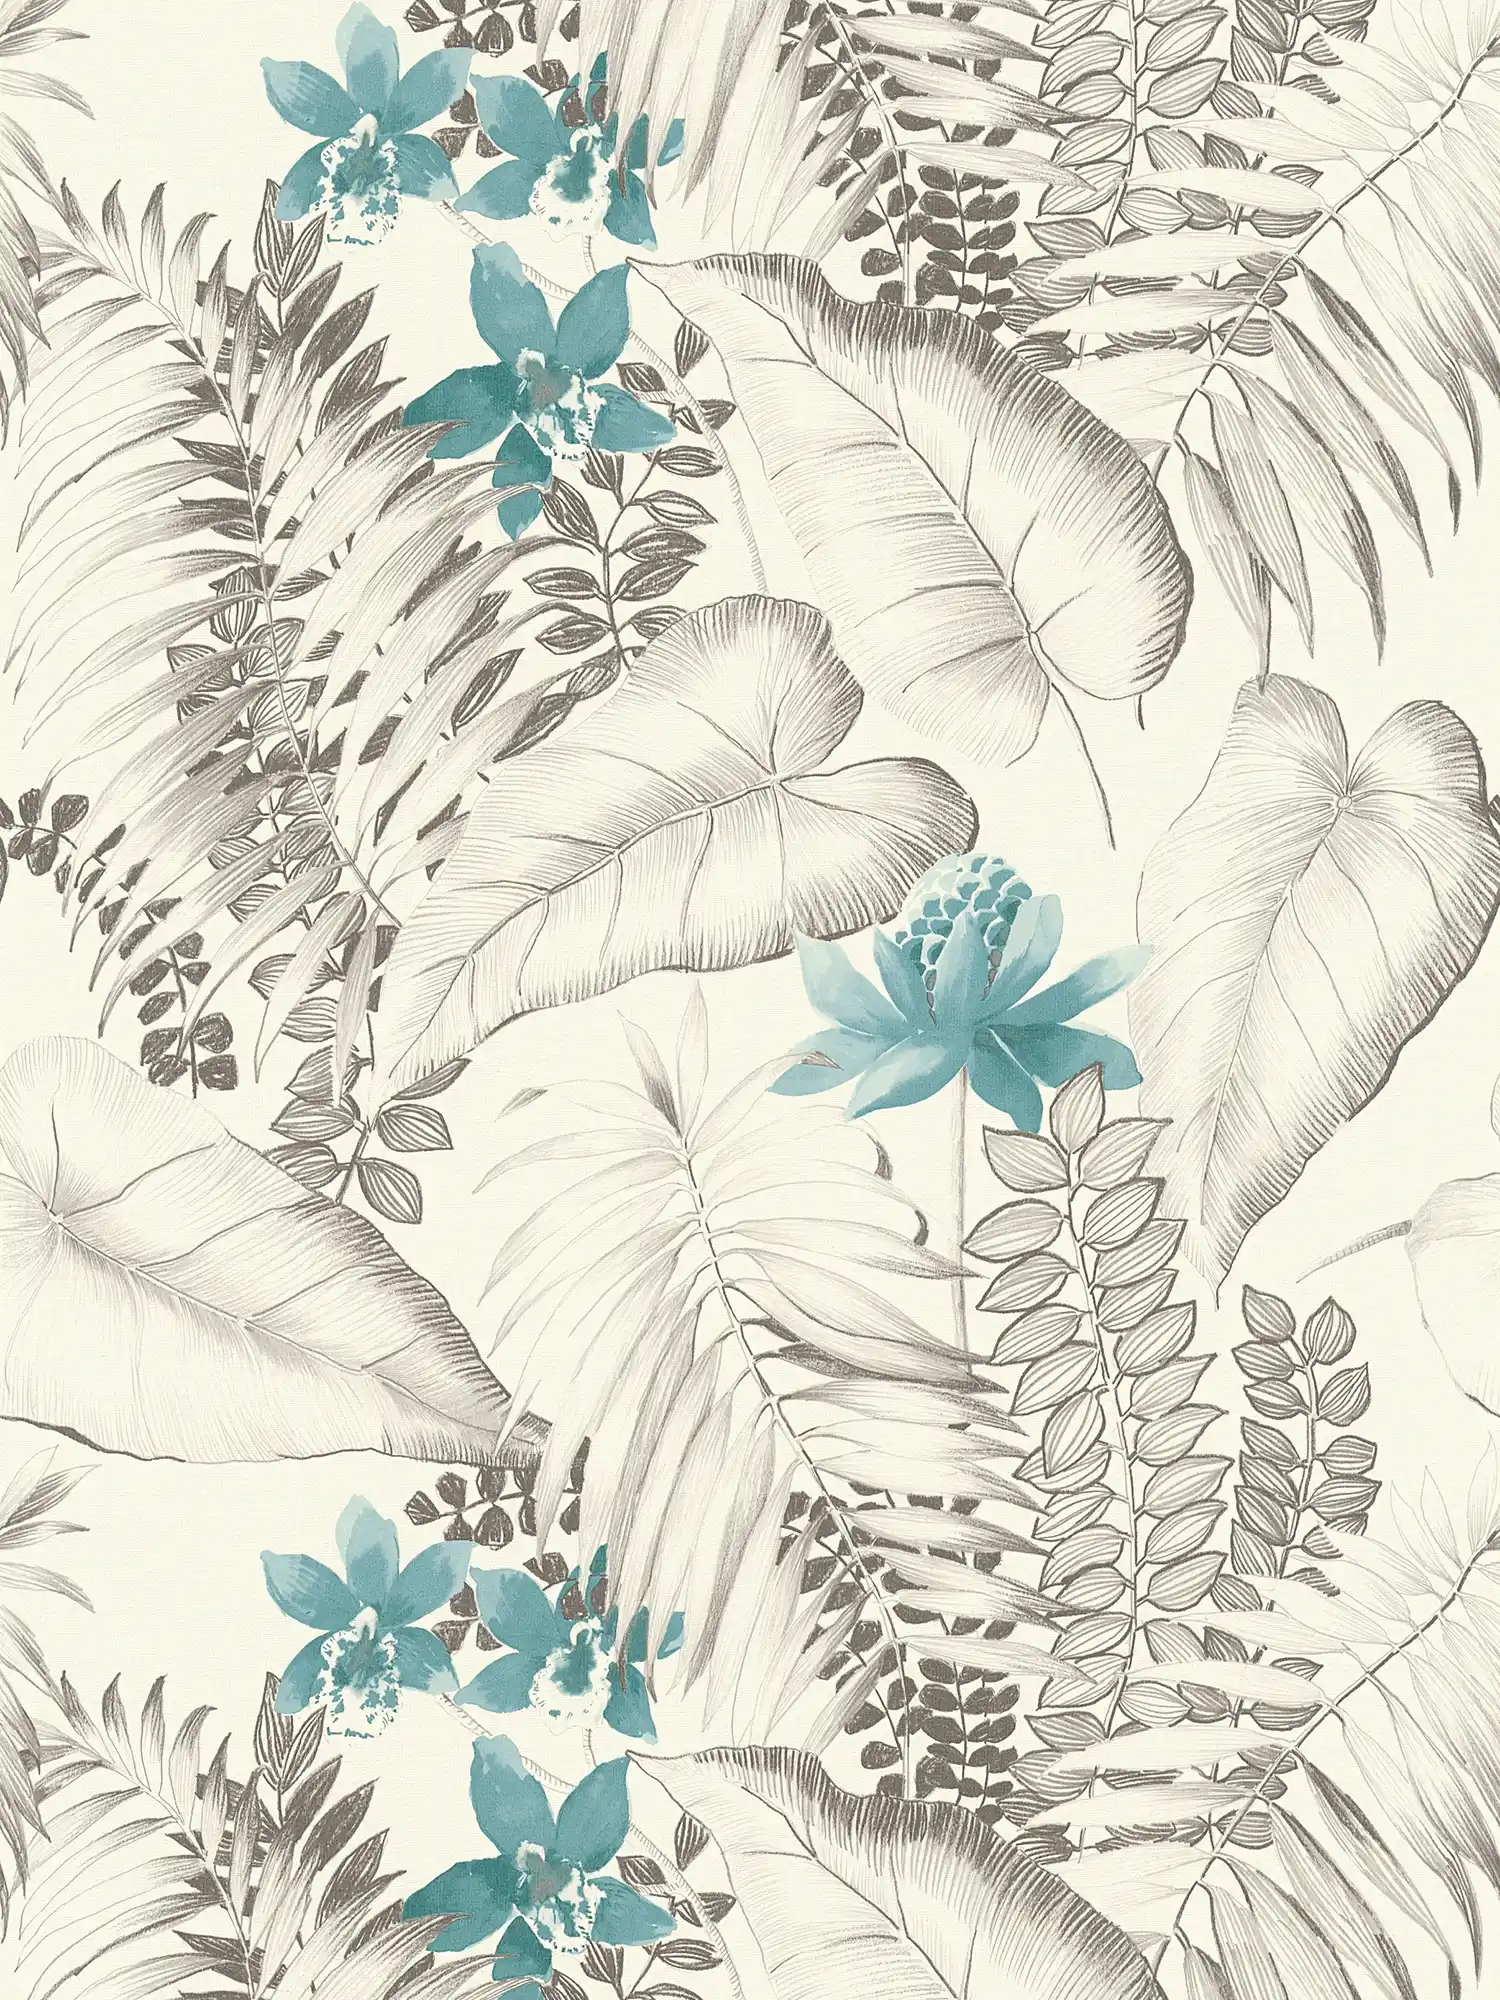         Mustertapete Blüten & exotische Vögel – Blau, Grau, Schwarz
    